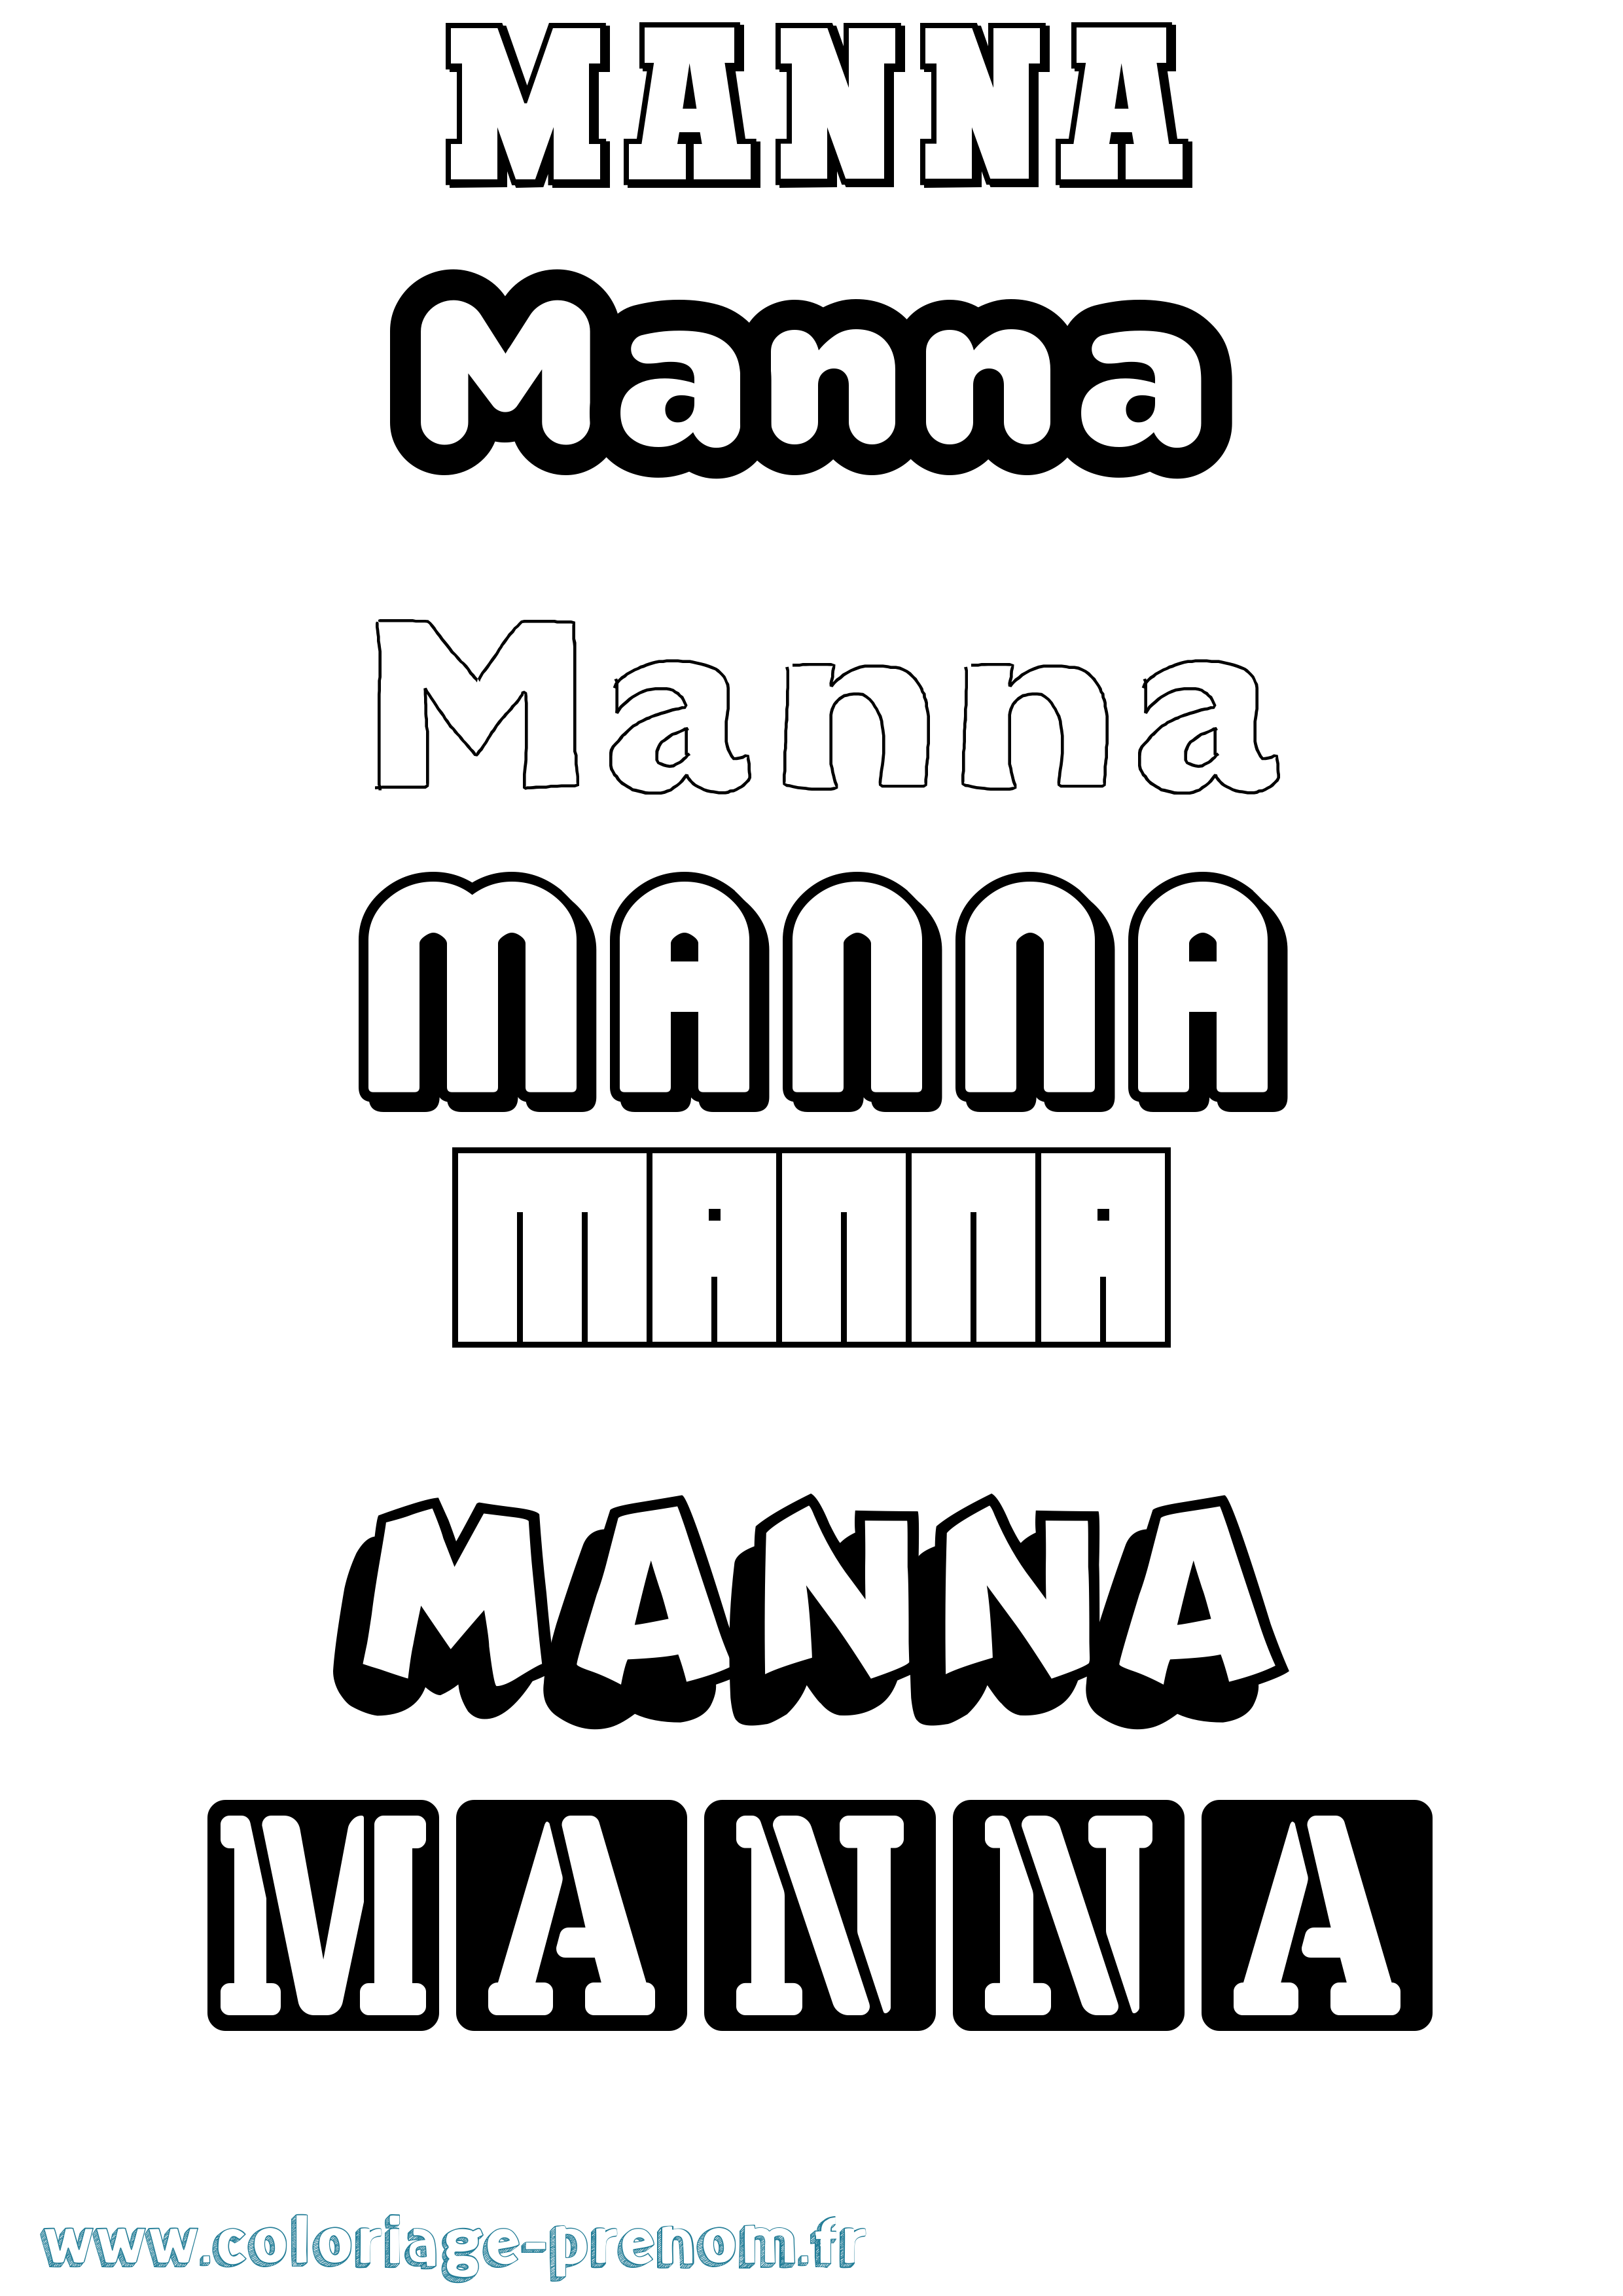 Coloriage prénom Manna Simple